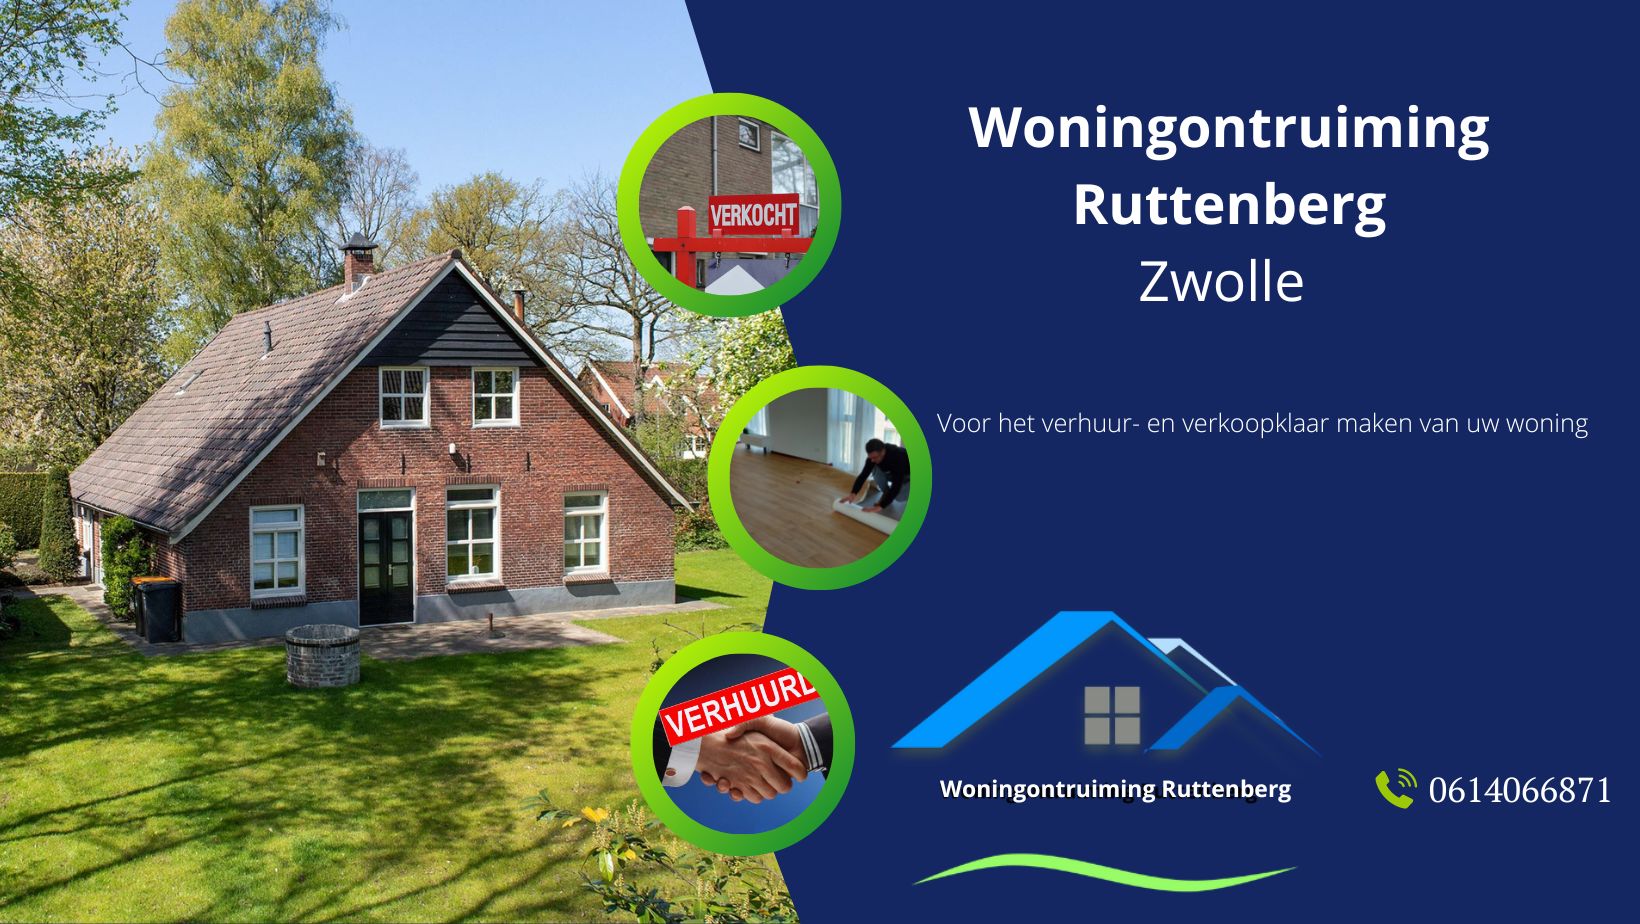 "Woningontruiming Zwolle"